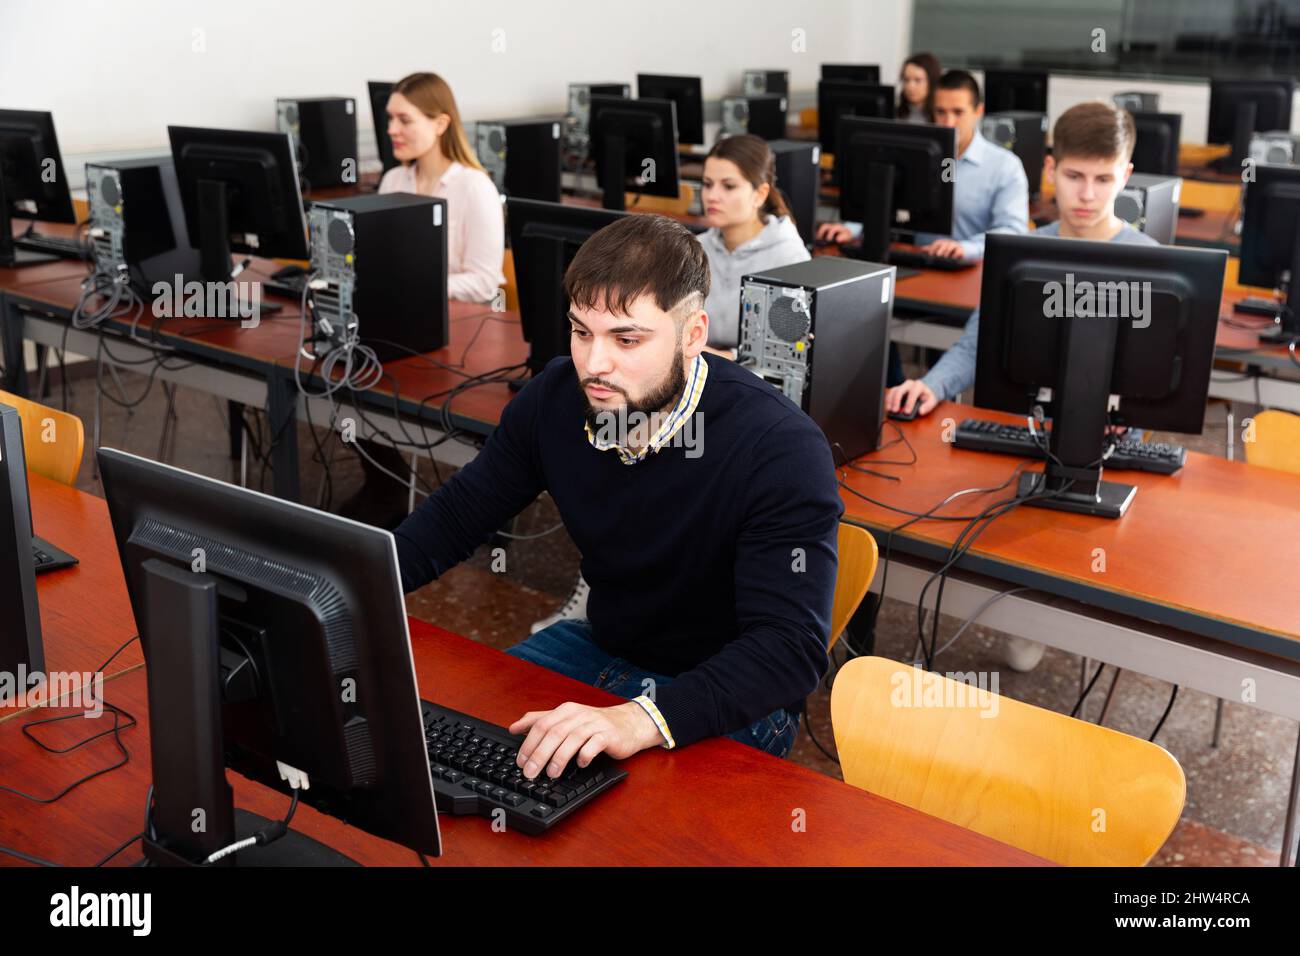 Les étudiants travaillant sur des ordinateurs Banque D'Images